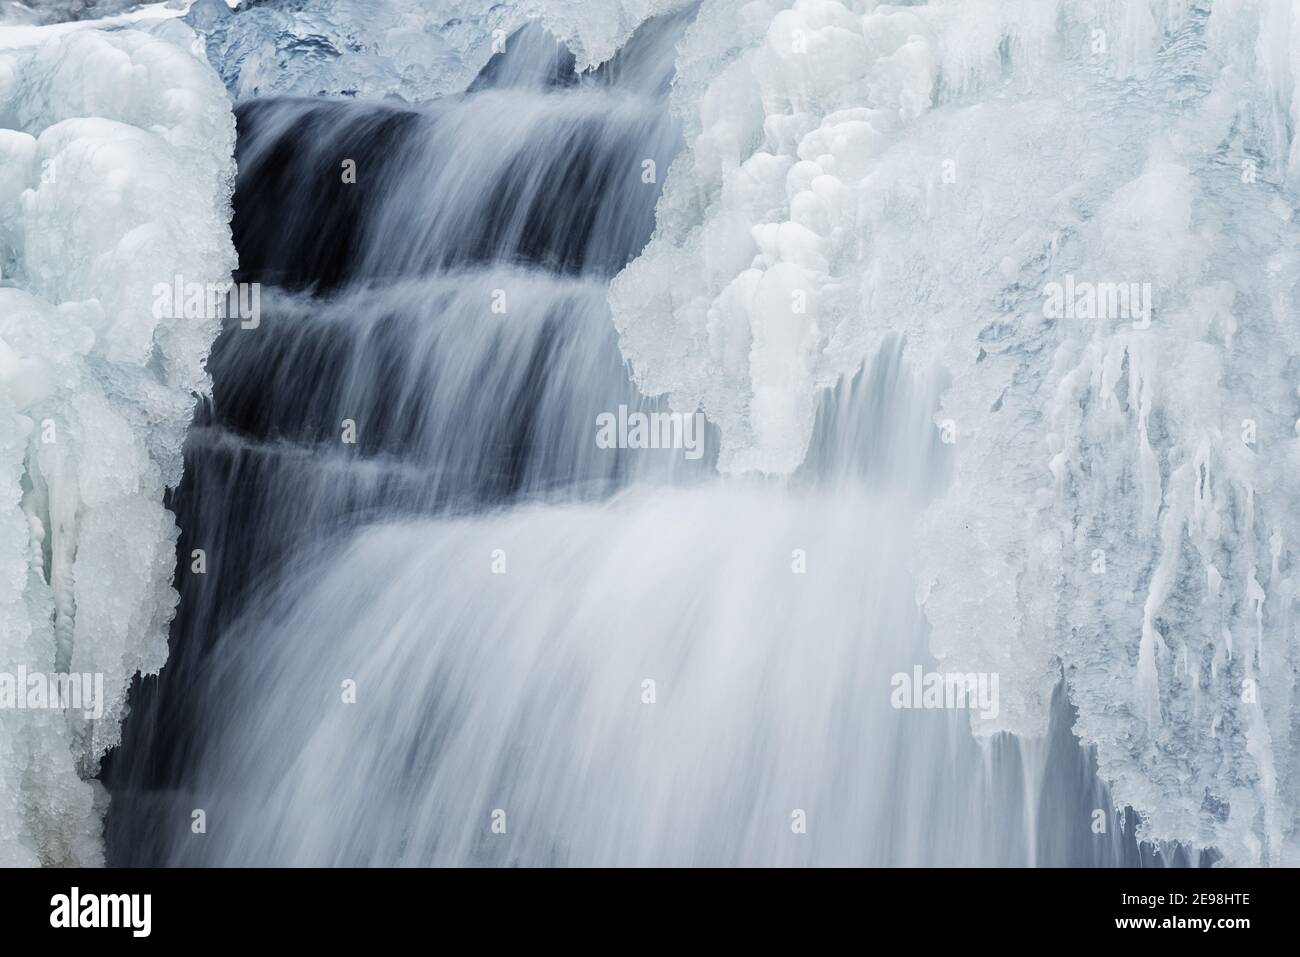 Formations de glace dans une cascade au Québec, Canada Banque D'Images